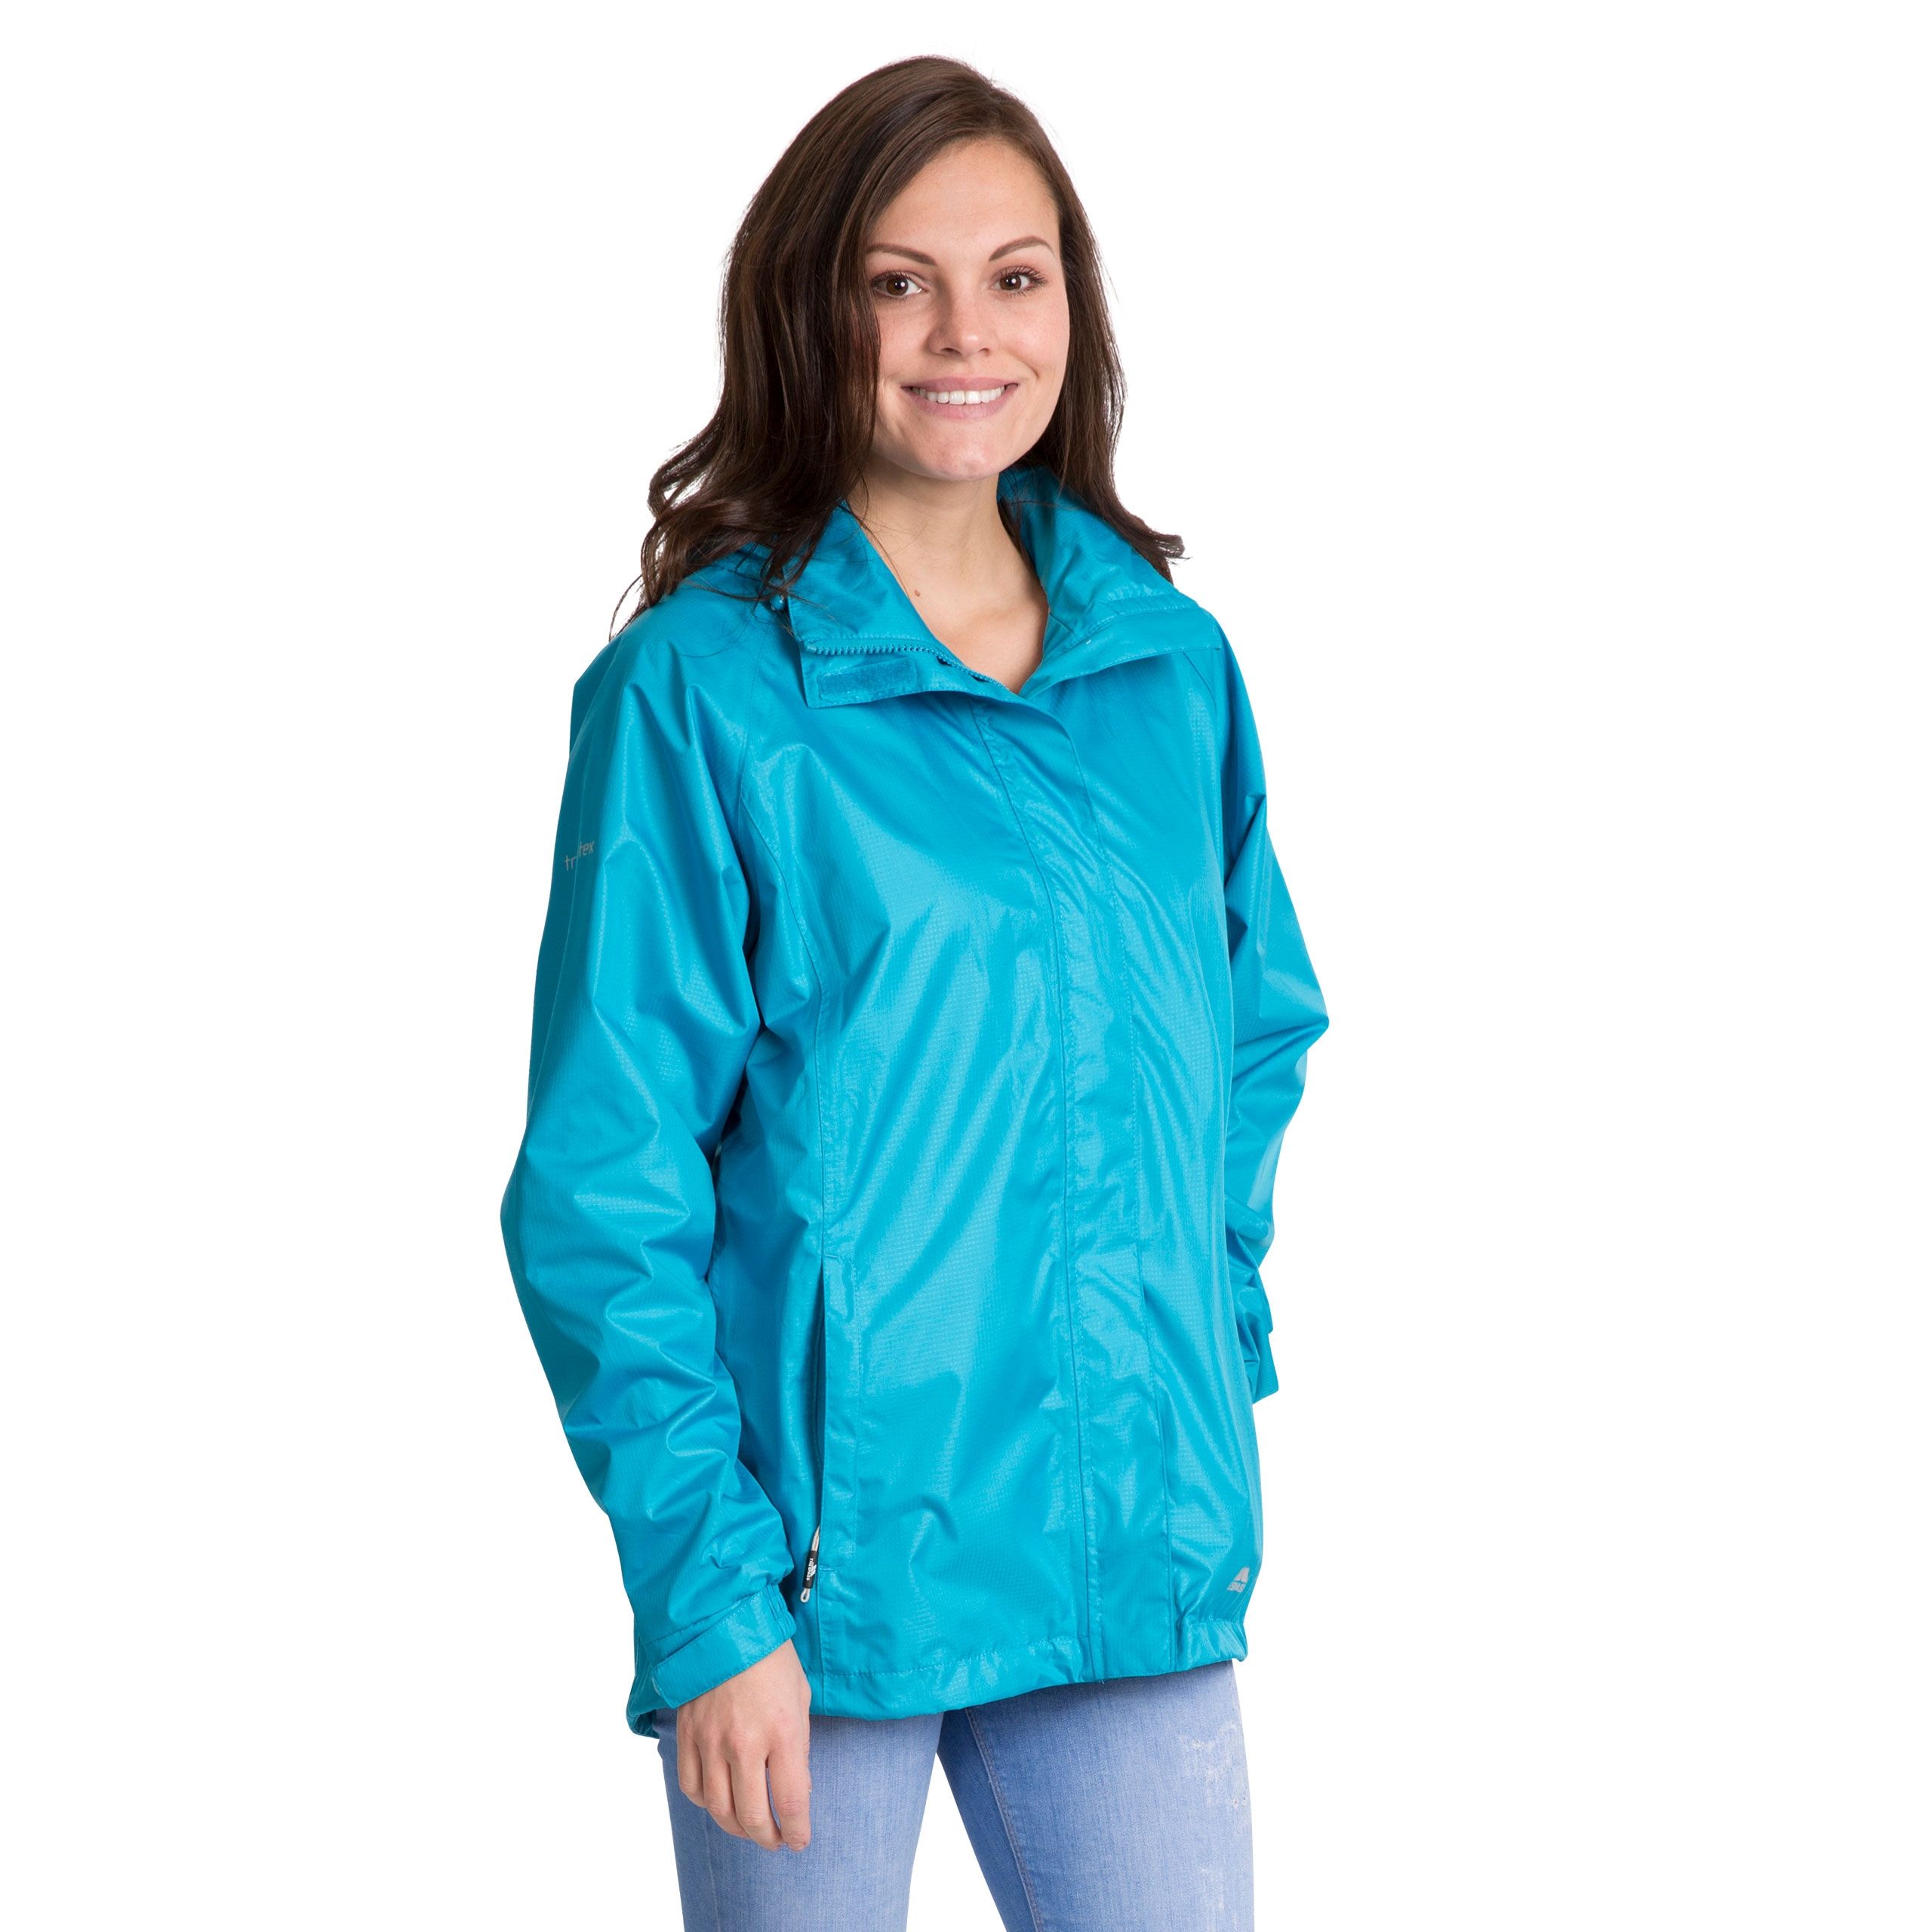 Lanna Ii Womens Waterproof Jacket